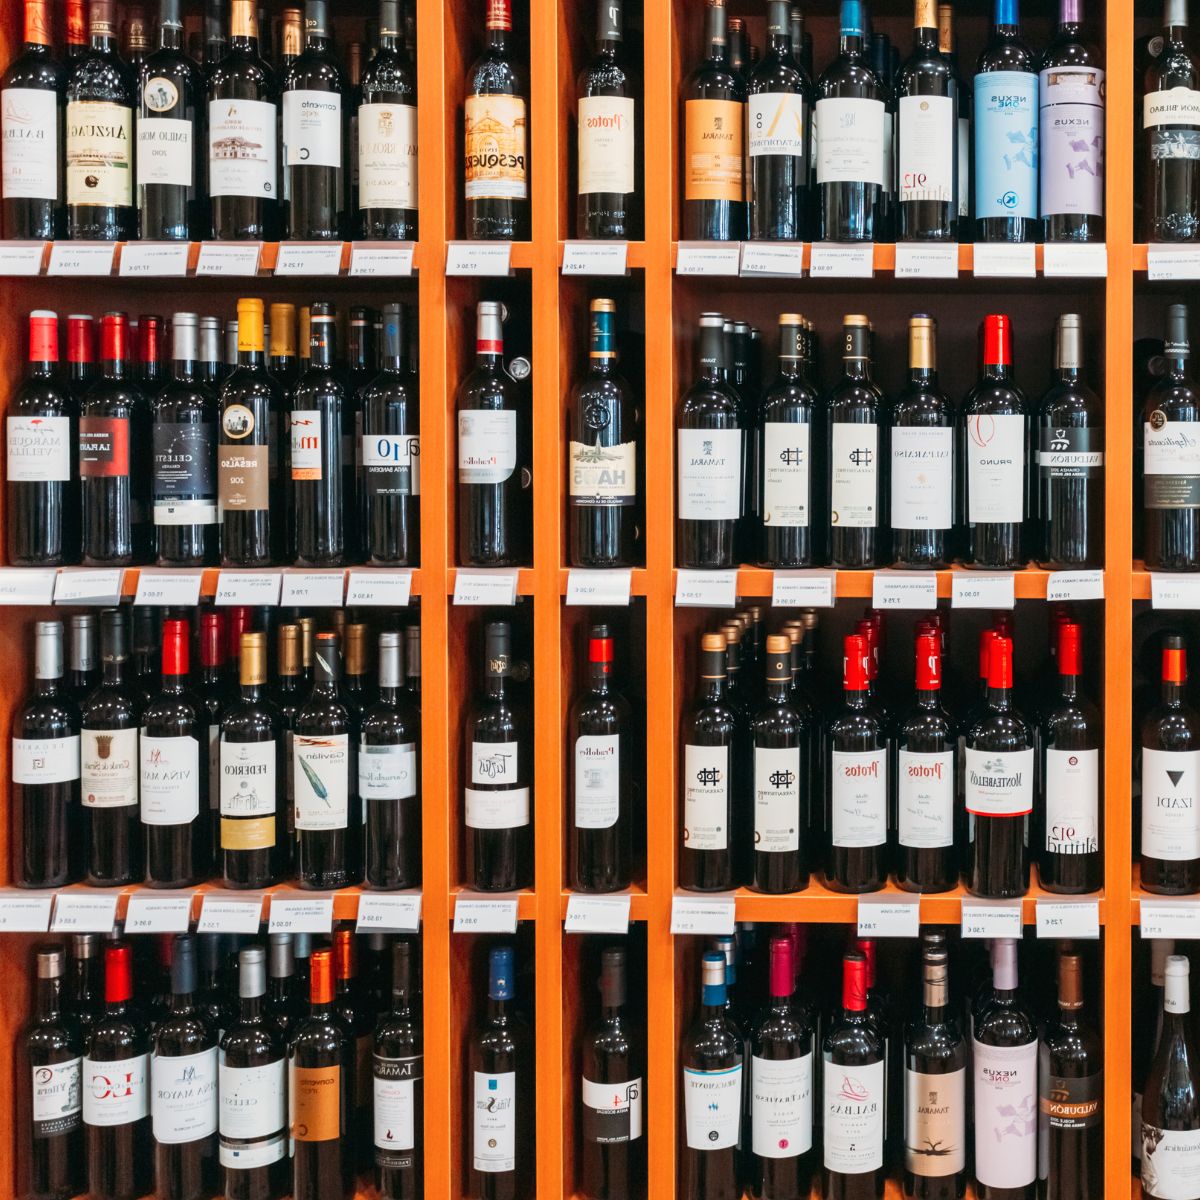 Wine bottles in a wine shop. 